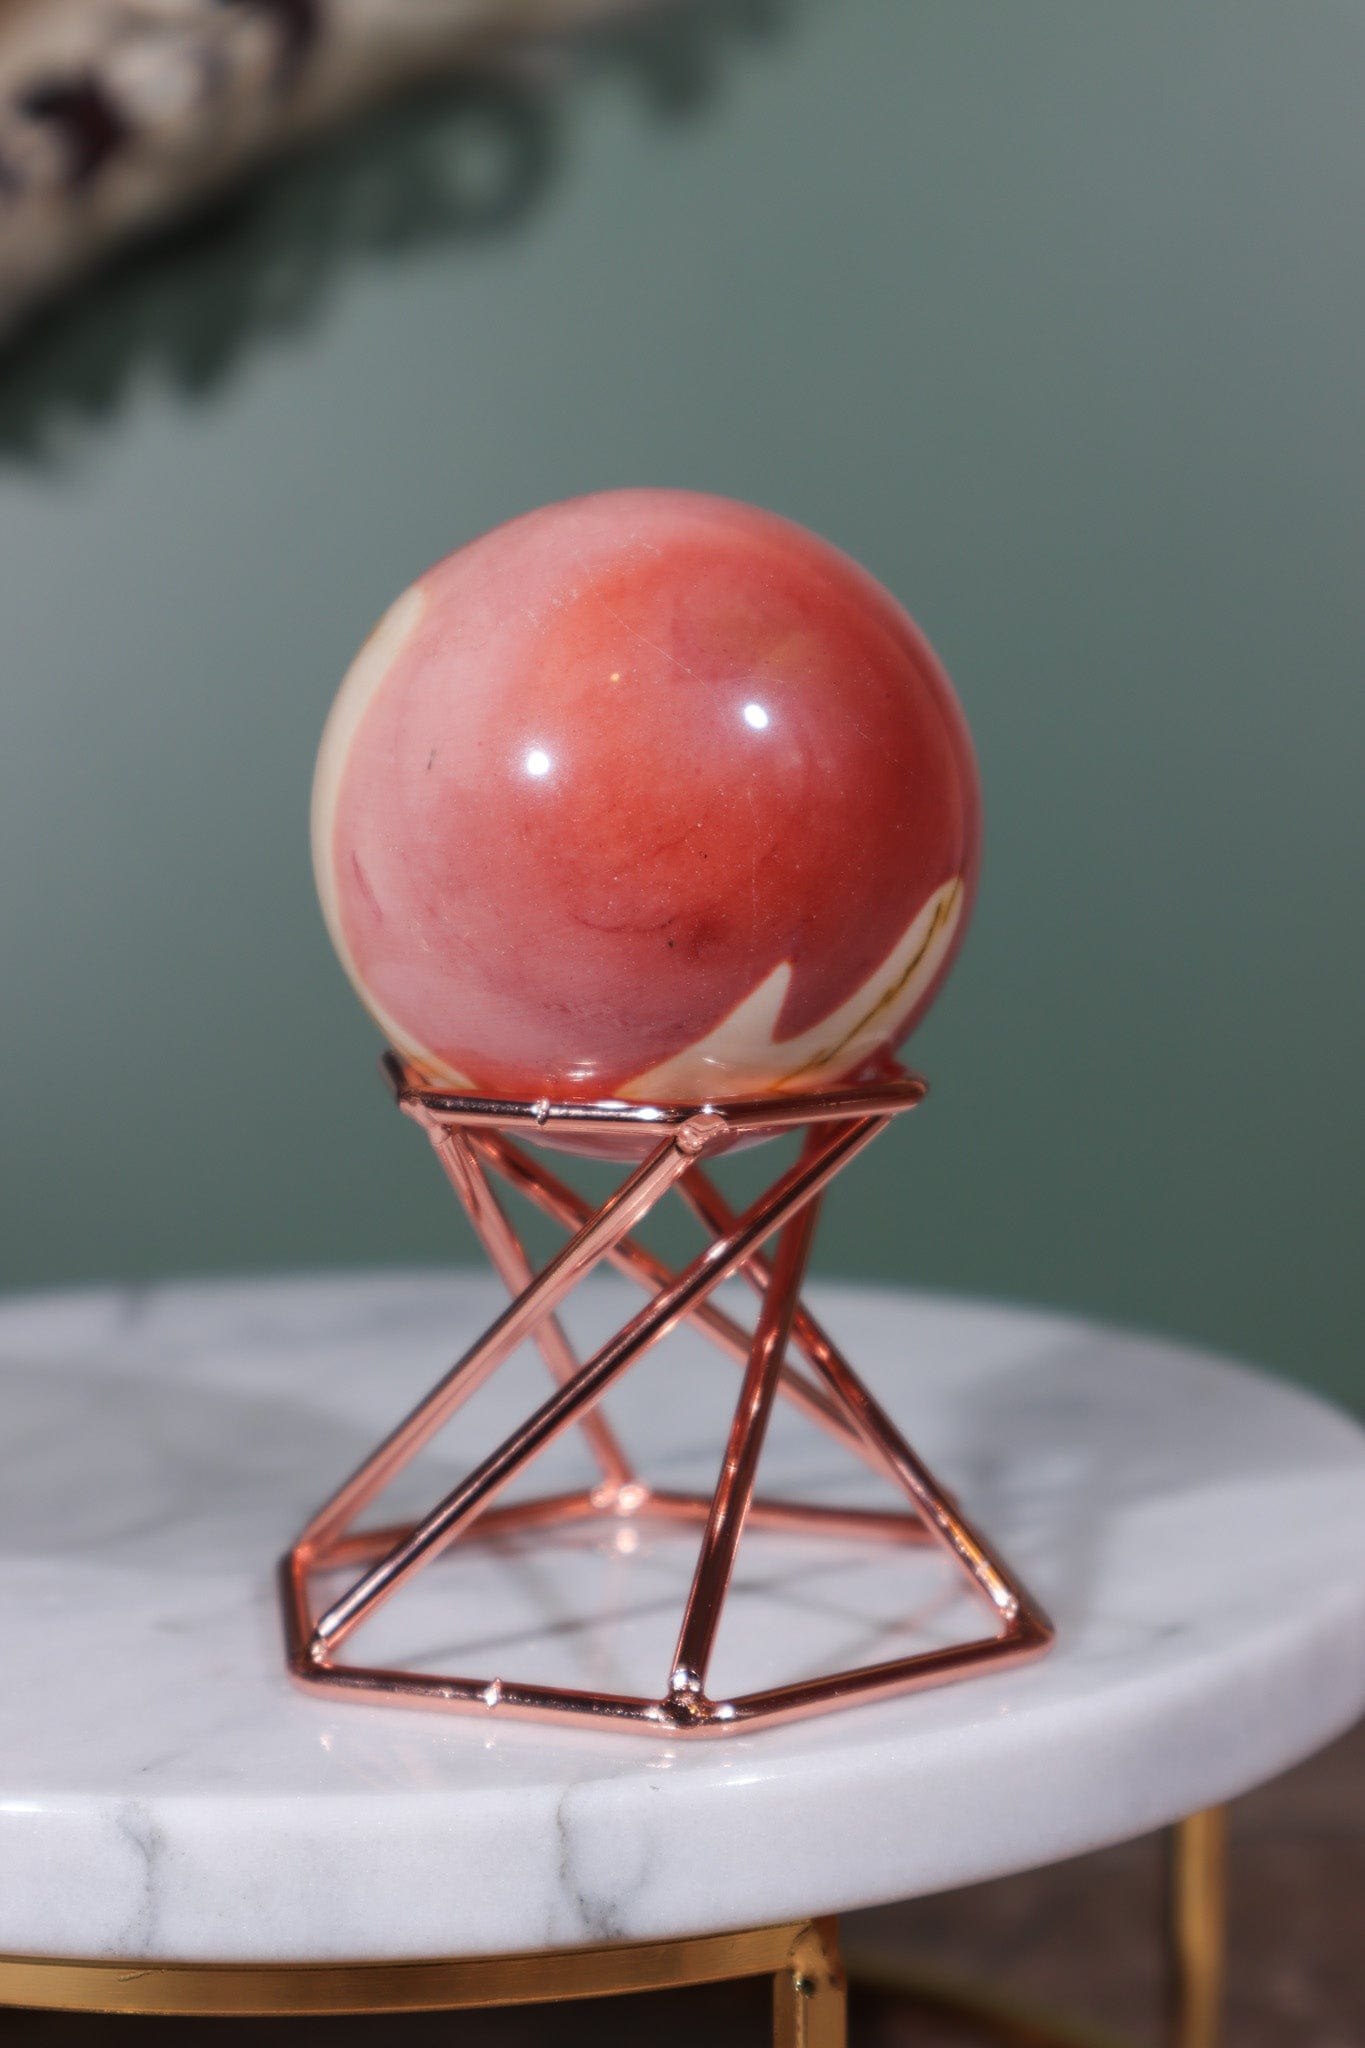 Mookaite Sphere 48mm Sphere Tali & Loz Crystals